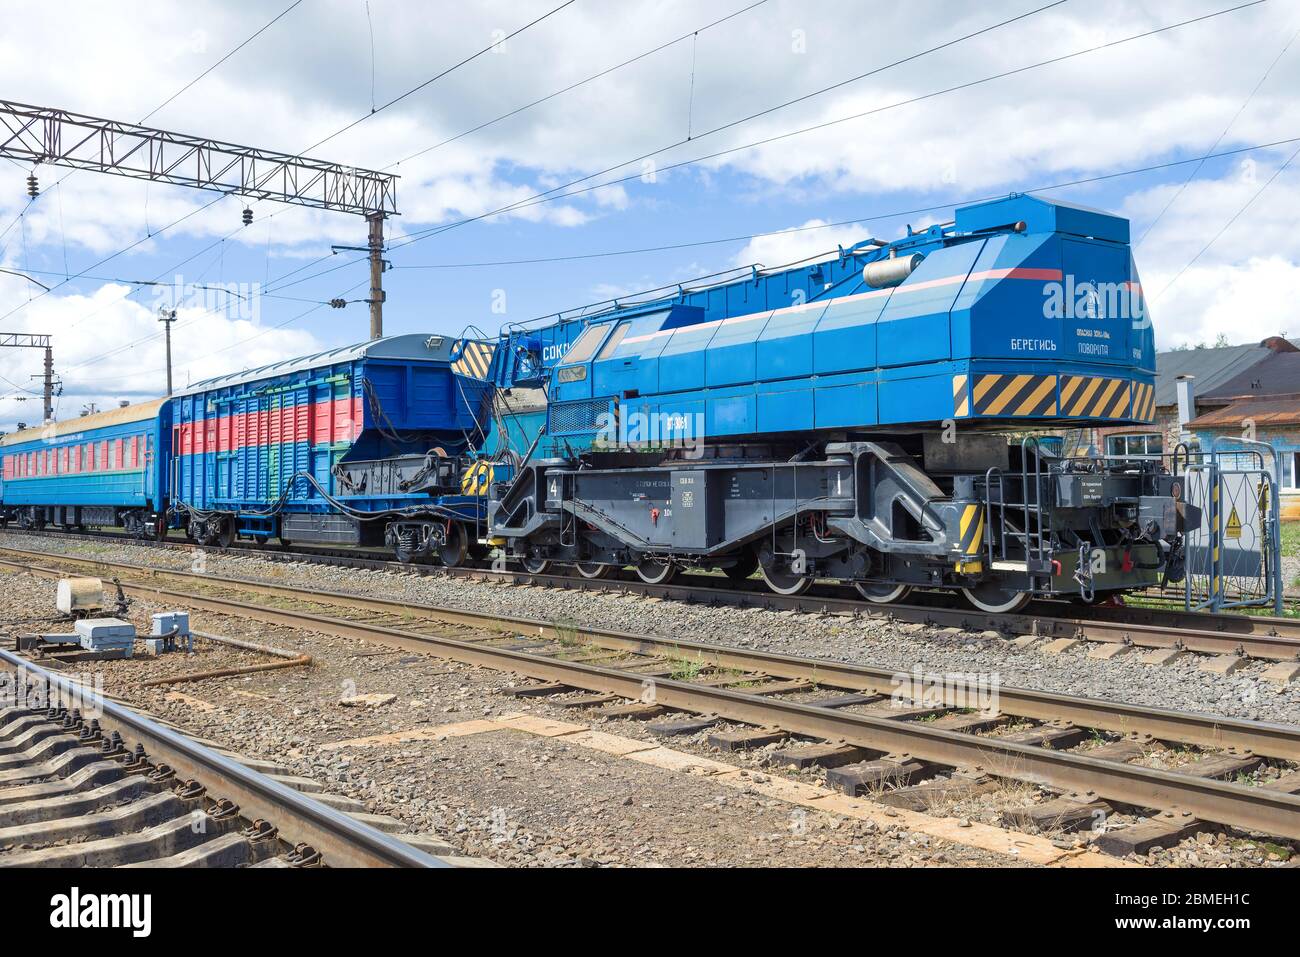 SHARYA, RUSSIE - 01 JUILLET 2019 : grue de chemin de fer Sokol 80.01M dans le cadre d'un train de récupération. Gare de Sharya du chemin de fer du Nord Banque D'Images